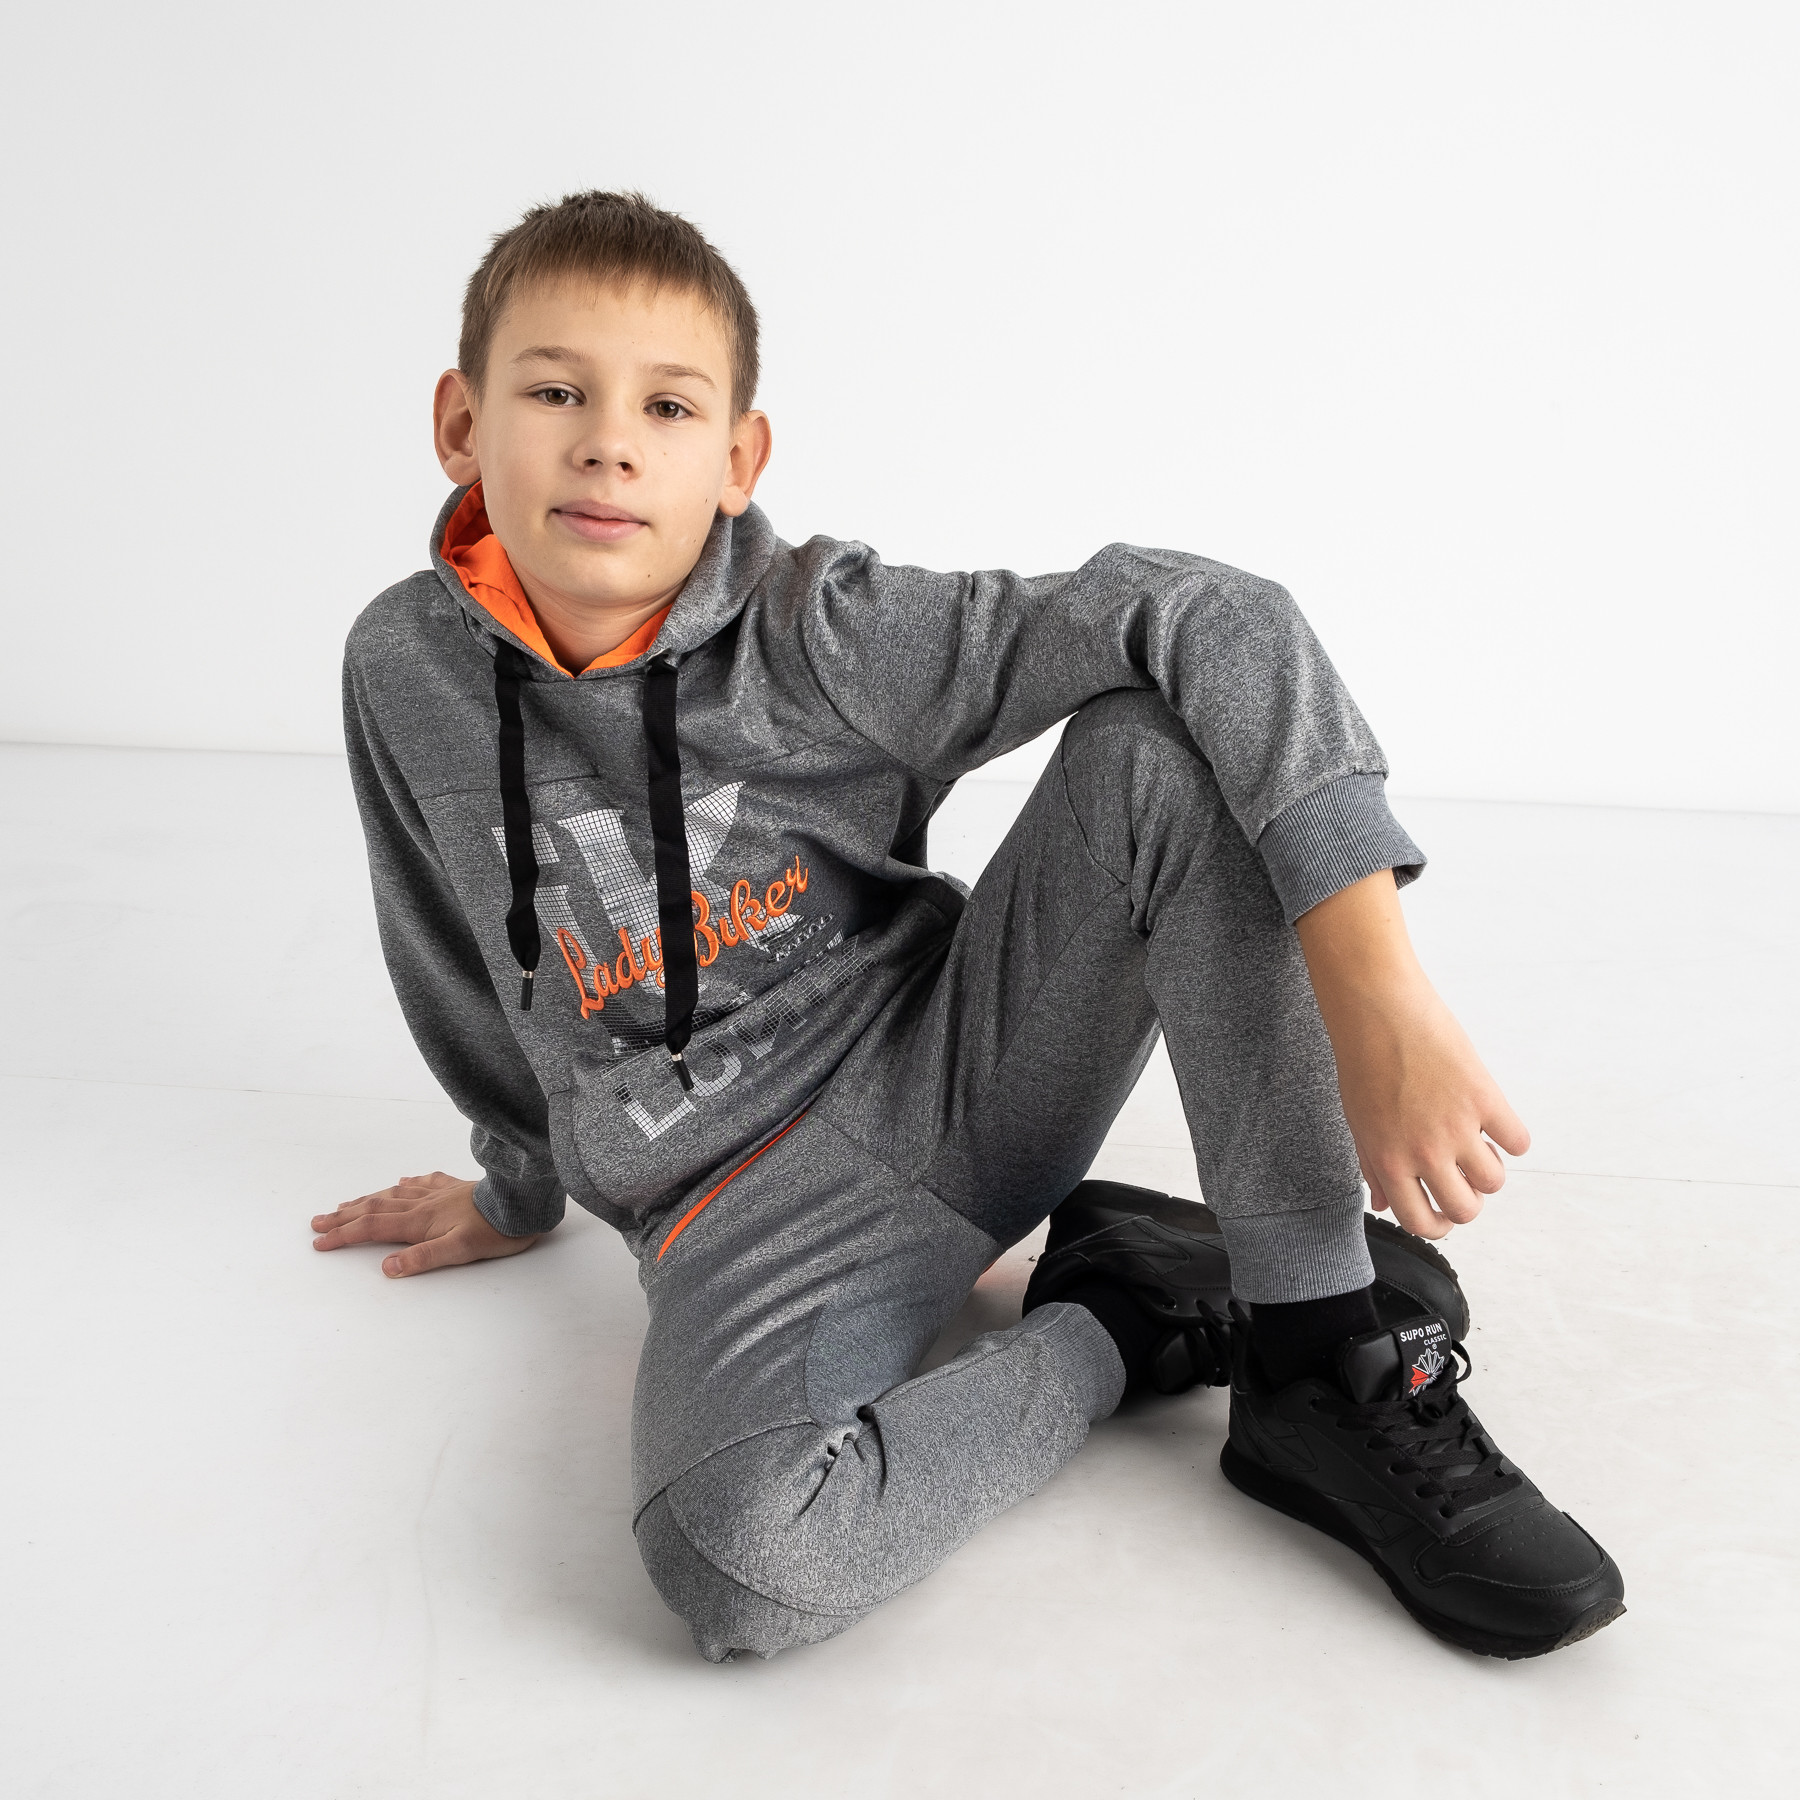 3003-4 светло-серый спортивный костюм на мальчика 6-12 лет (4 ед. размеры: 6.8.10.12)